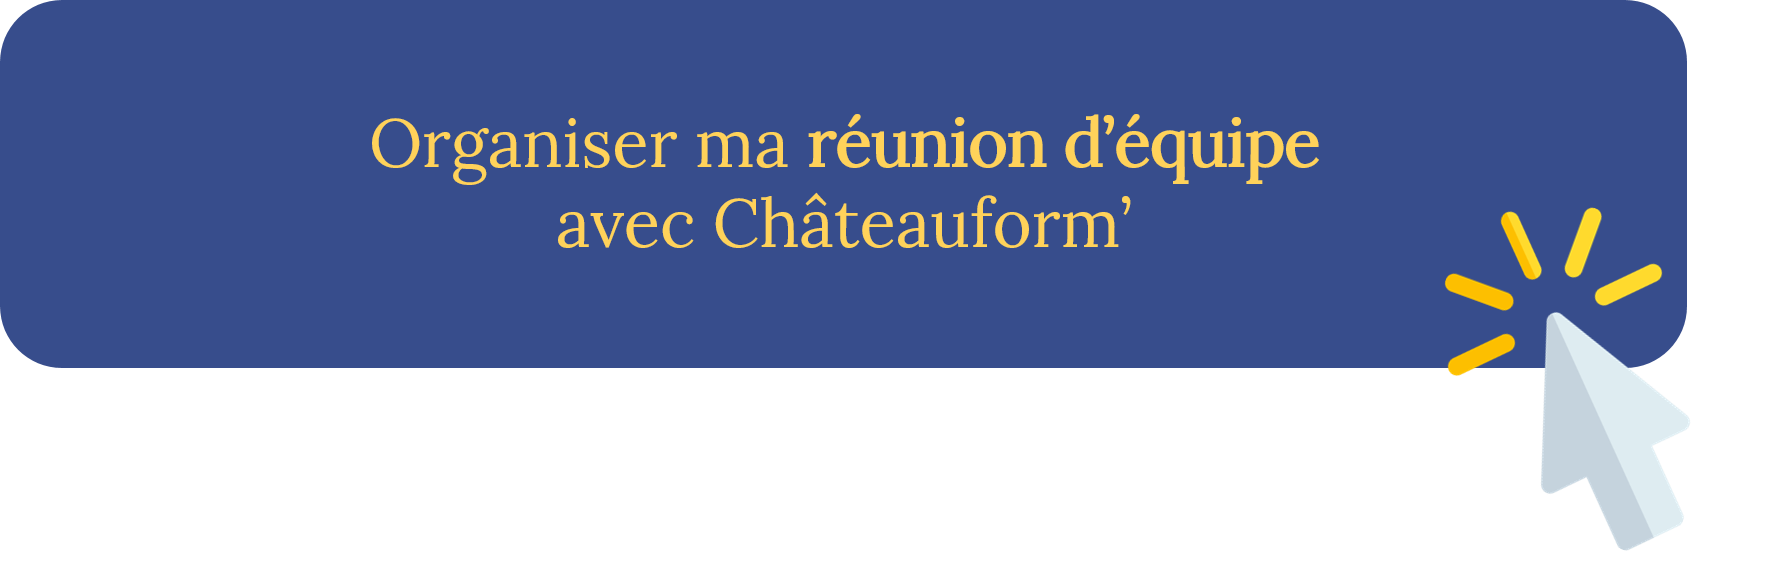 Orgainser la réunion d'équipe efficace avec Châteauform - Blog